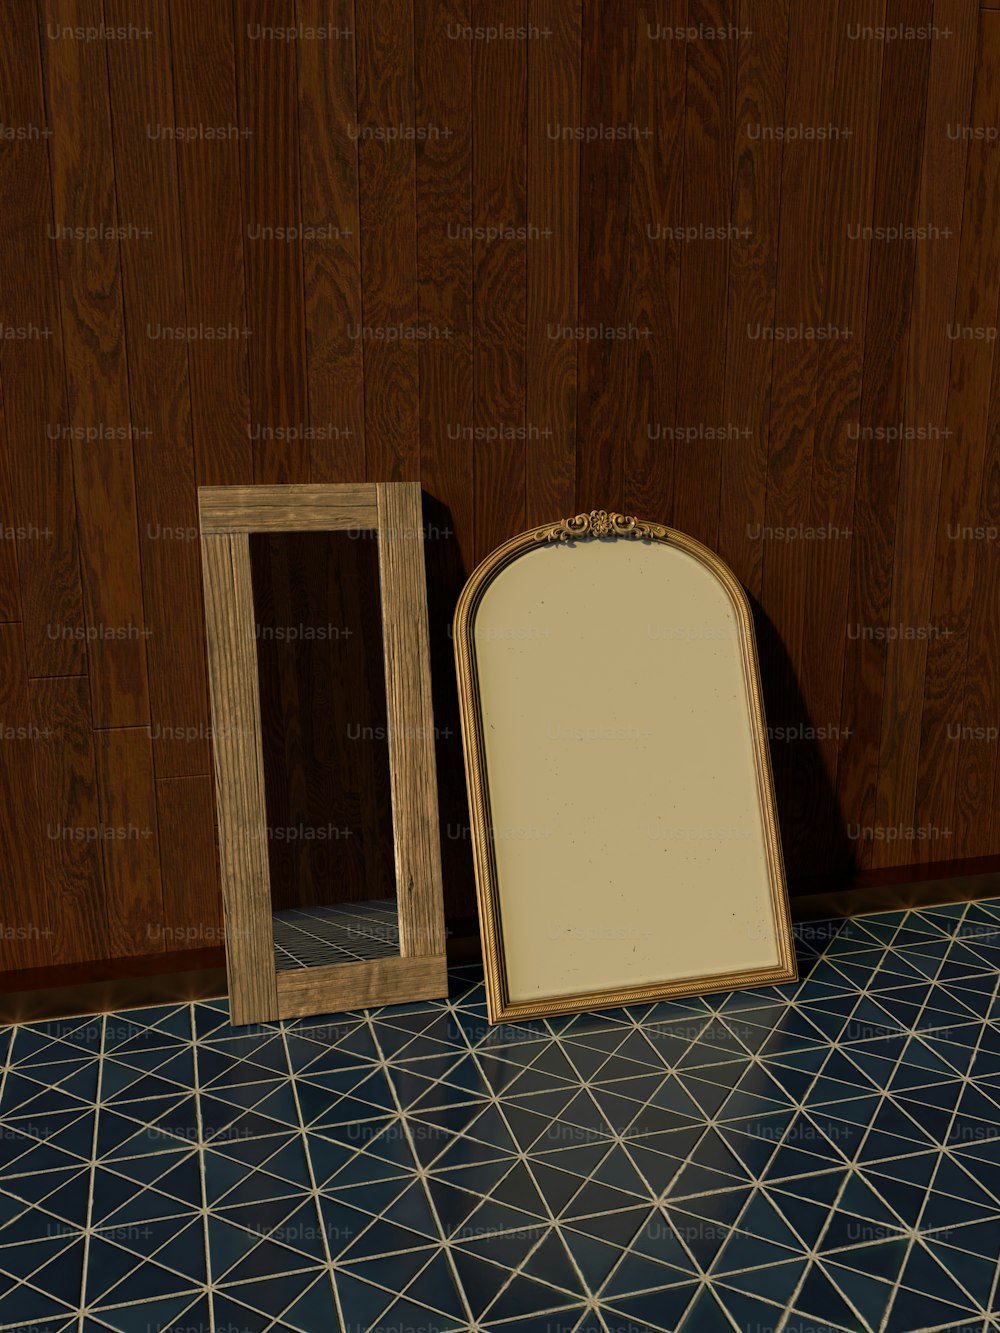 Un espejo sentado en un suelo de baldosas junto a un marco de madera